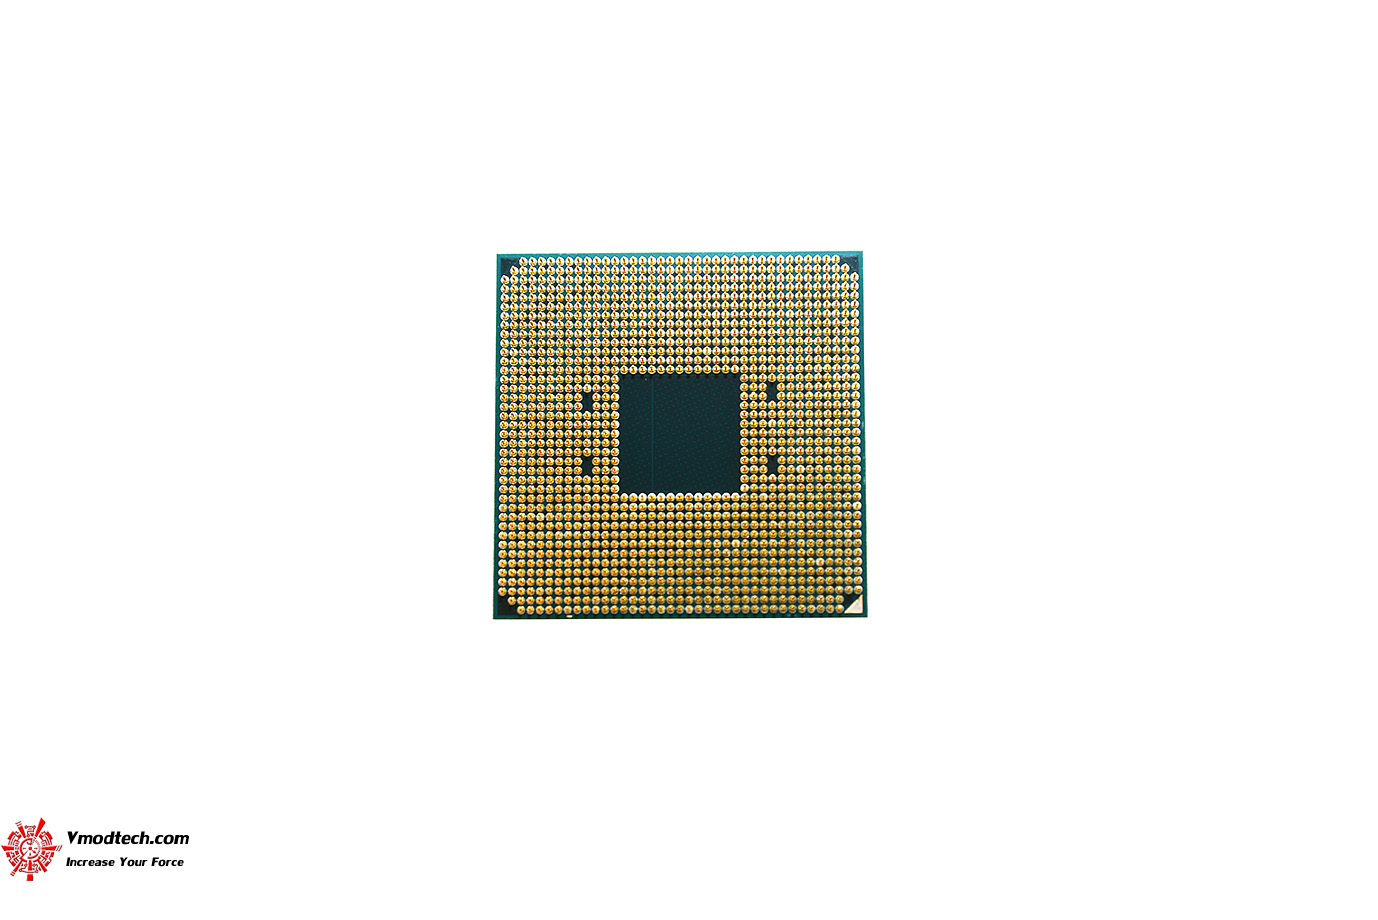 dsc 5949 AMD RYZEN 5 3600X PROCESSOR REVIEW 